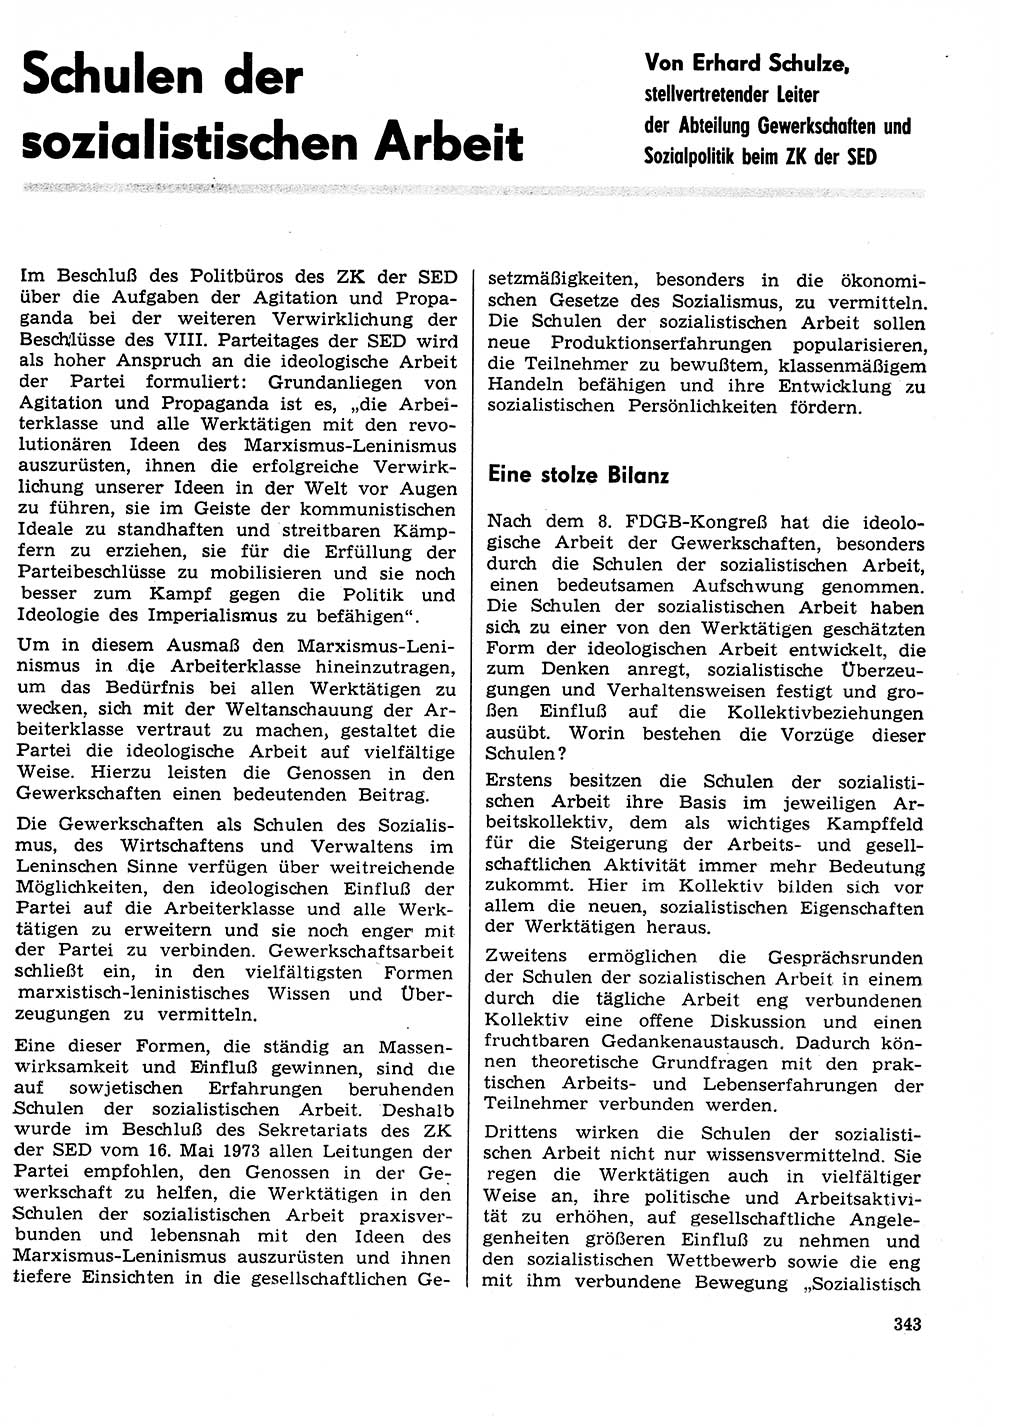 Neuer Weg (NW), Organ des Zentralkomitees (ZK) der SED (Sozialistische Einheitspartei Deutschlands) für Fragen des Parteilebens, 29. Jahrgang [Deutsche Demokratische Republik (DDR)] 1974, Seite 343 (NW ZK SED DDR 1974, S. 343)